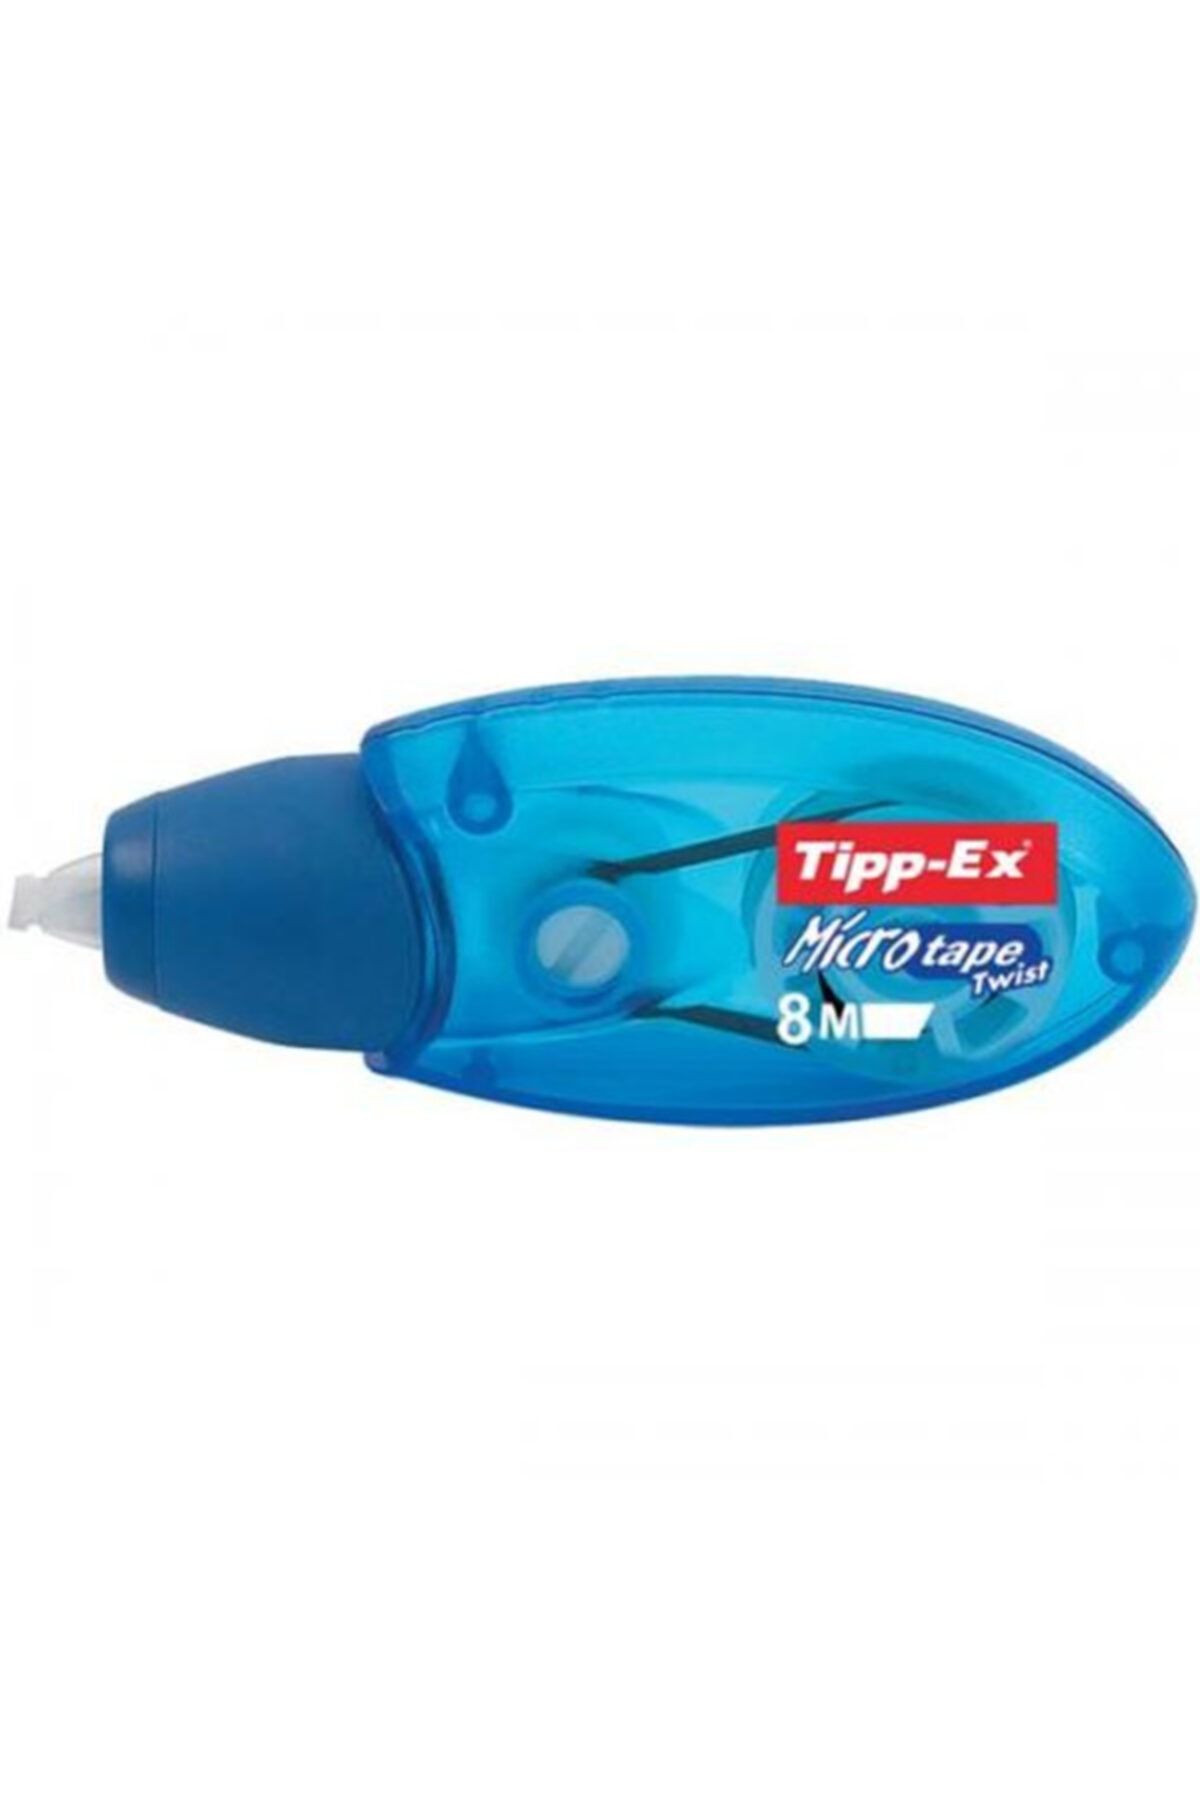 Tipp-Ex Micro Tape Twist Şerit Daksil 5mm x 8mt 10 Lu 8706151